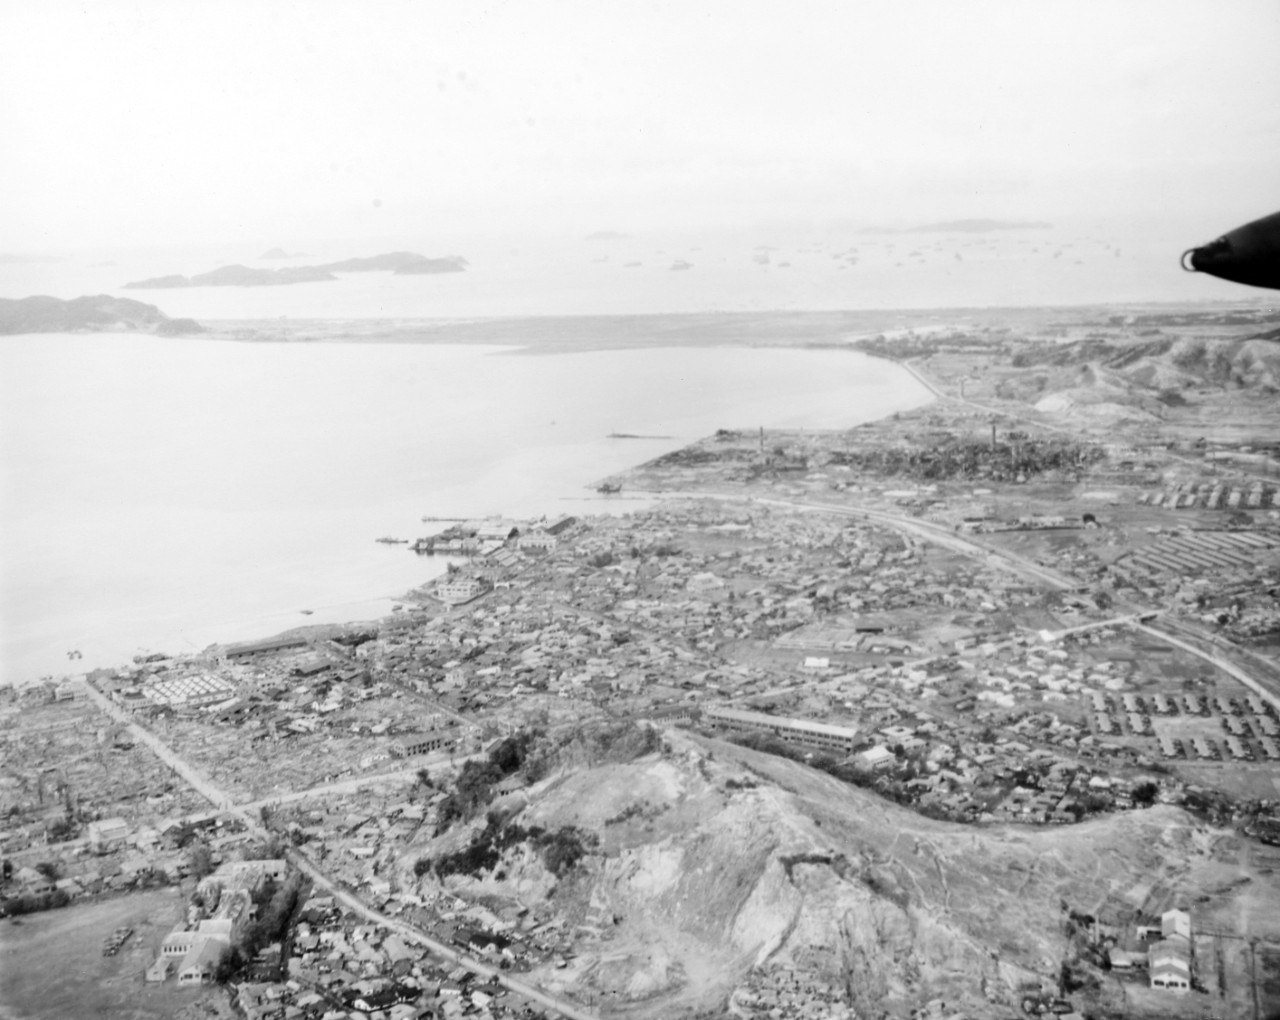 Photo #: 80-G-422311  Wonsan Landings, October 1950